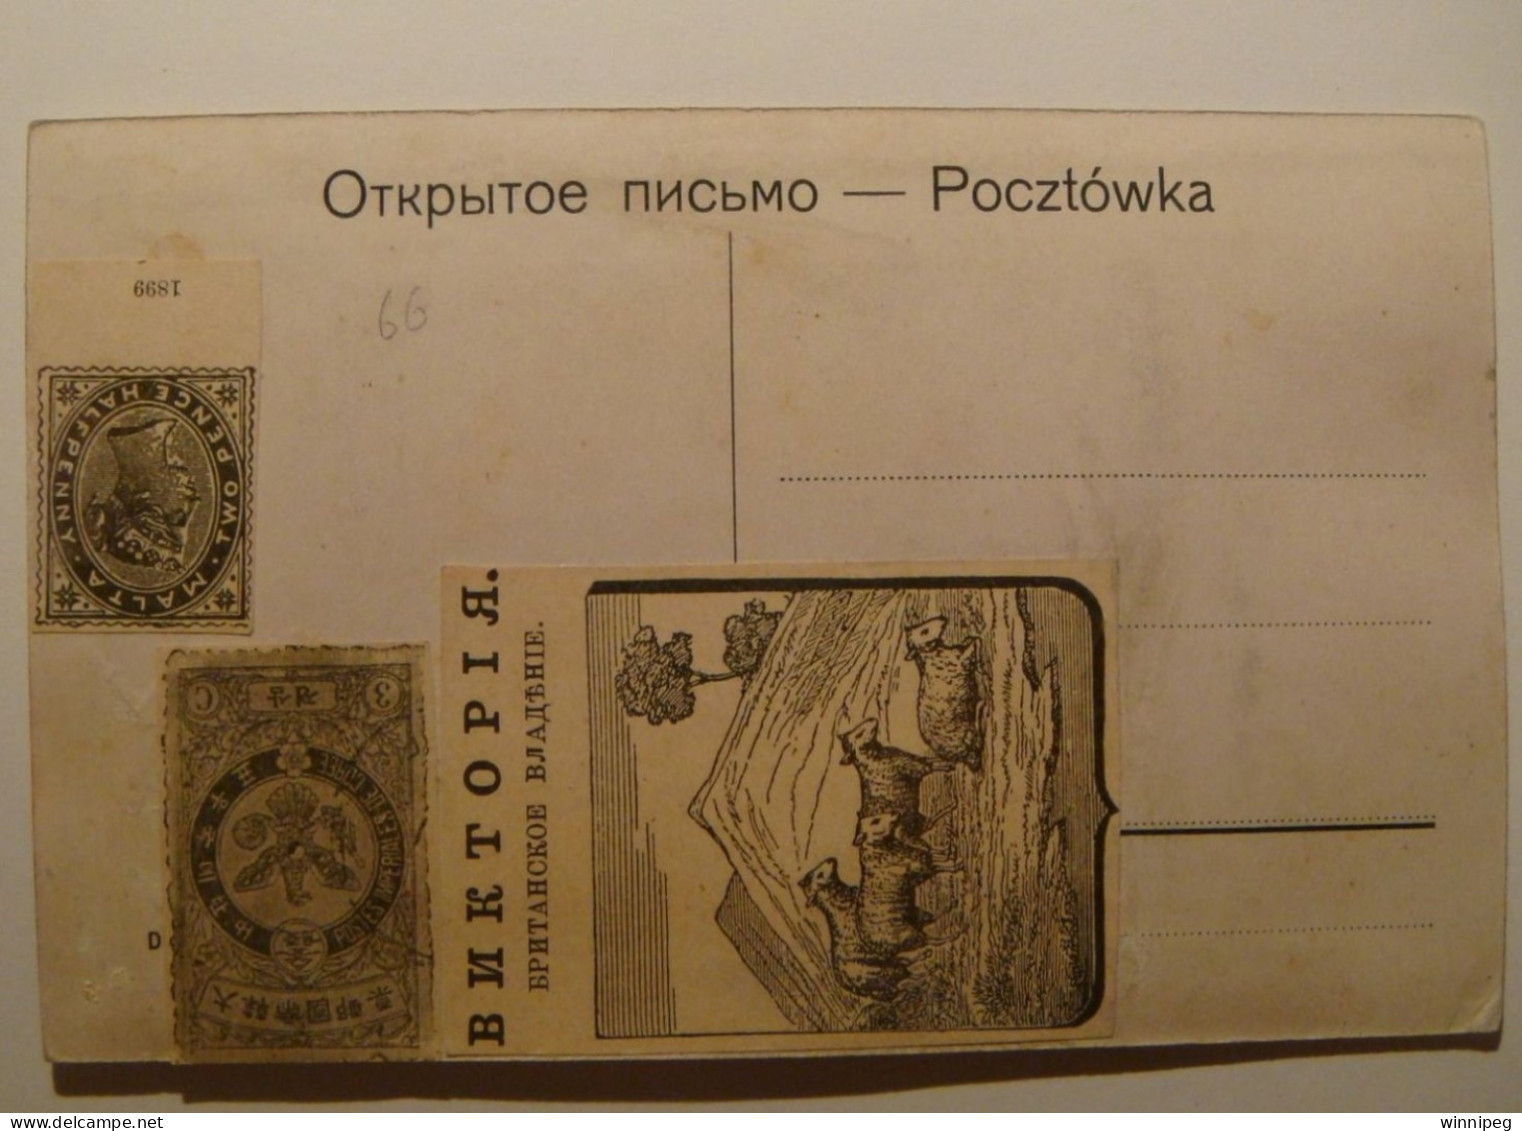 Lwow.Pomnik Glowackiego.Leporello.WWI,issued For Russian Troops.8 Views Inside.Poland.Ukraine. - Ukraine